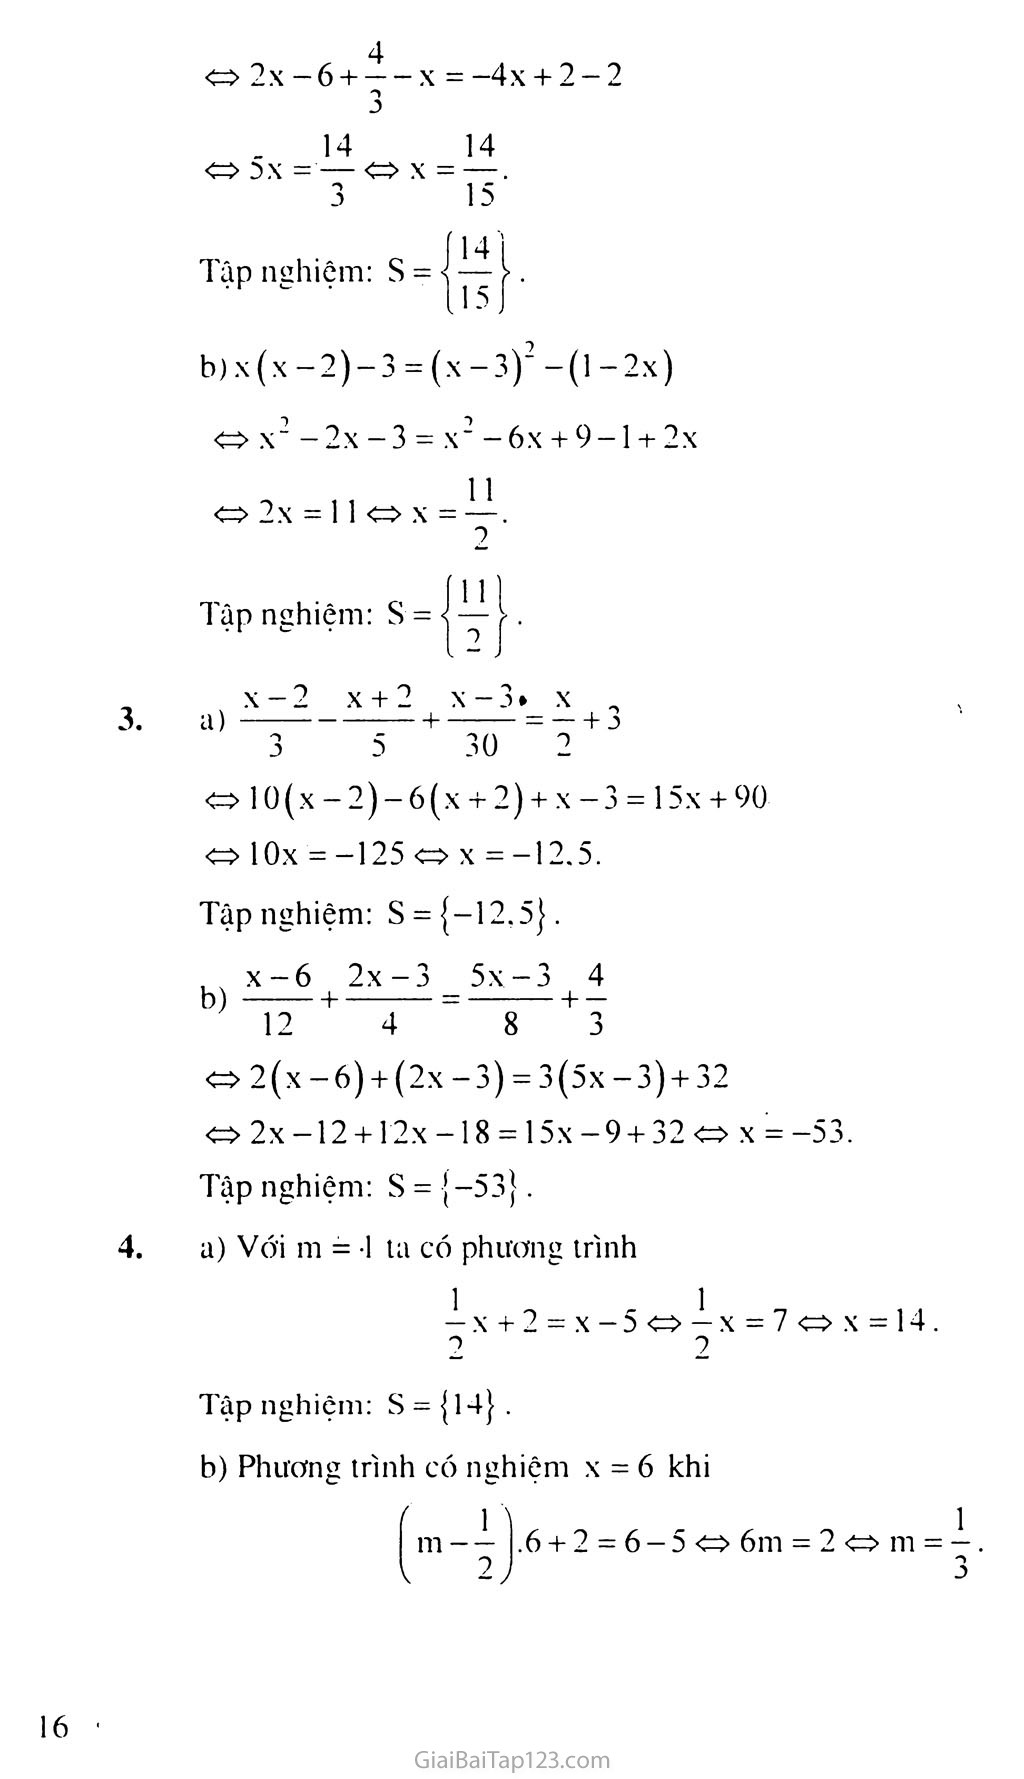 Bài 3. Phương trình đưa được về dạng ax + b = 0 trang 7